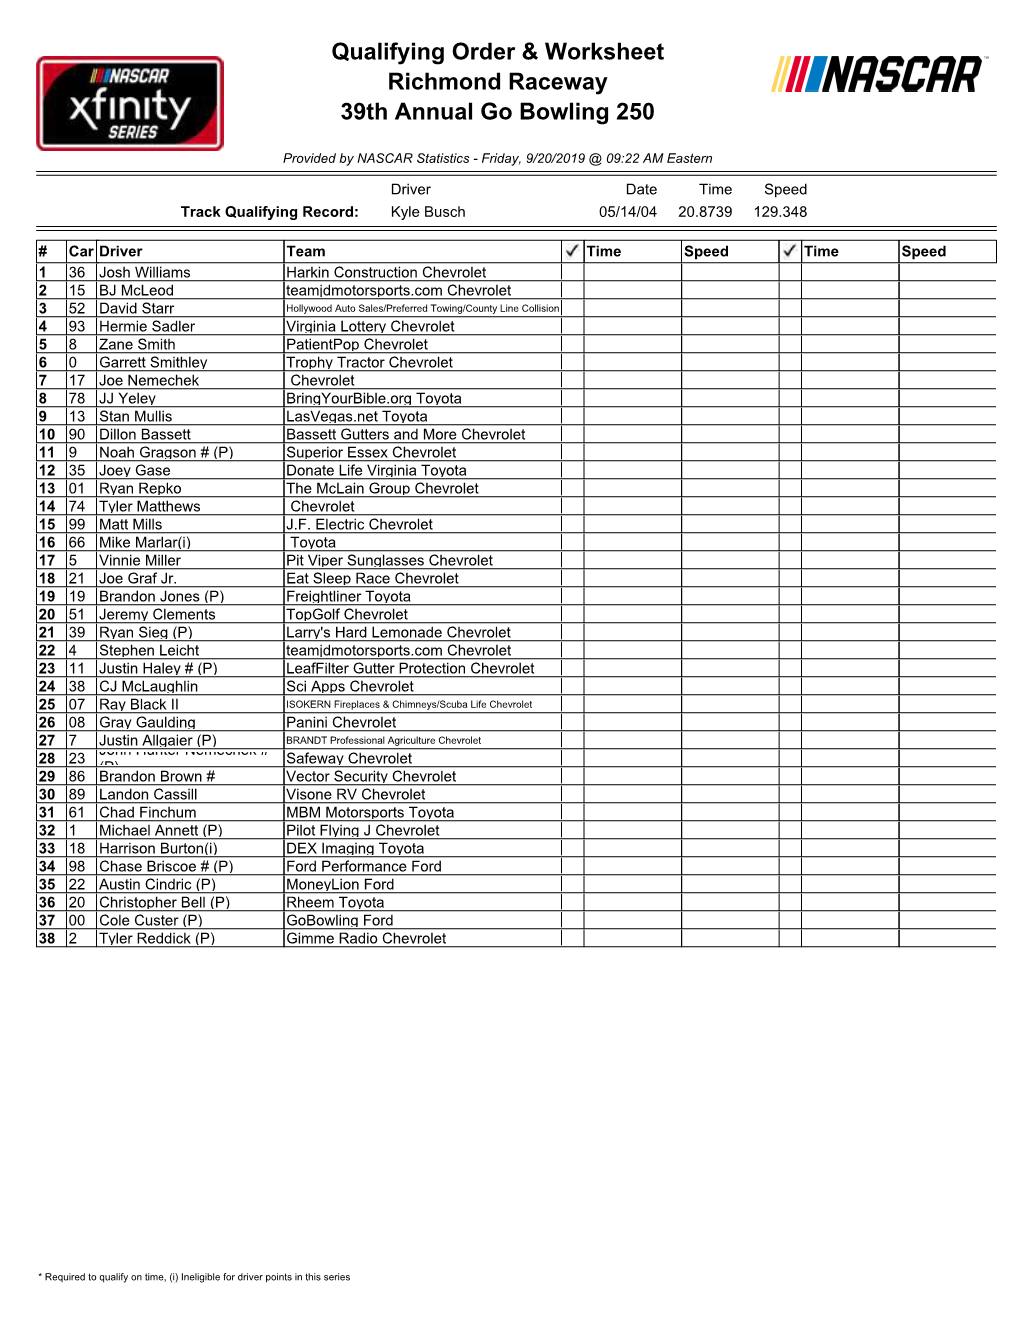 Qualifying Order & Worksheet Richmond Raceway 39Th Annual Go Bowling 250